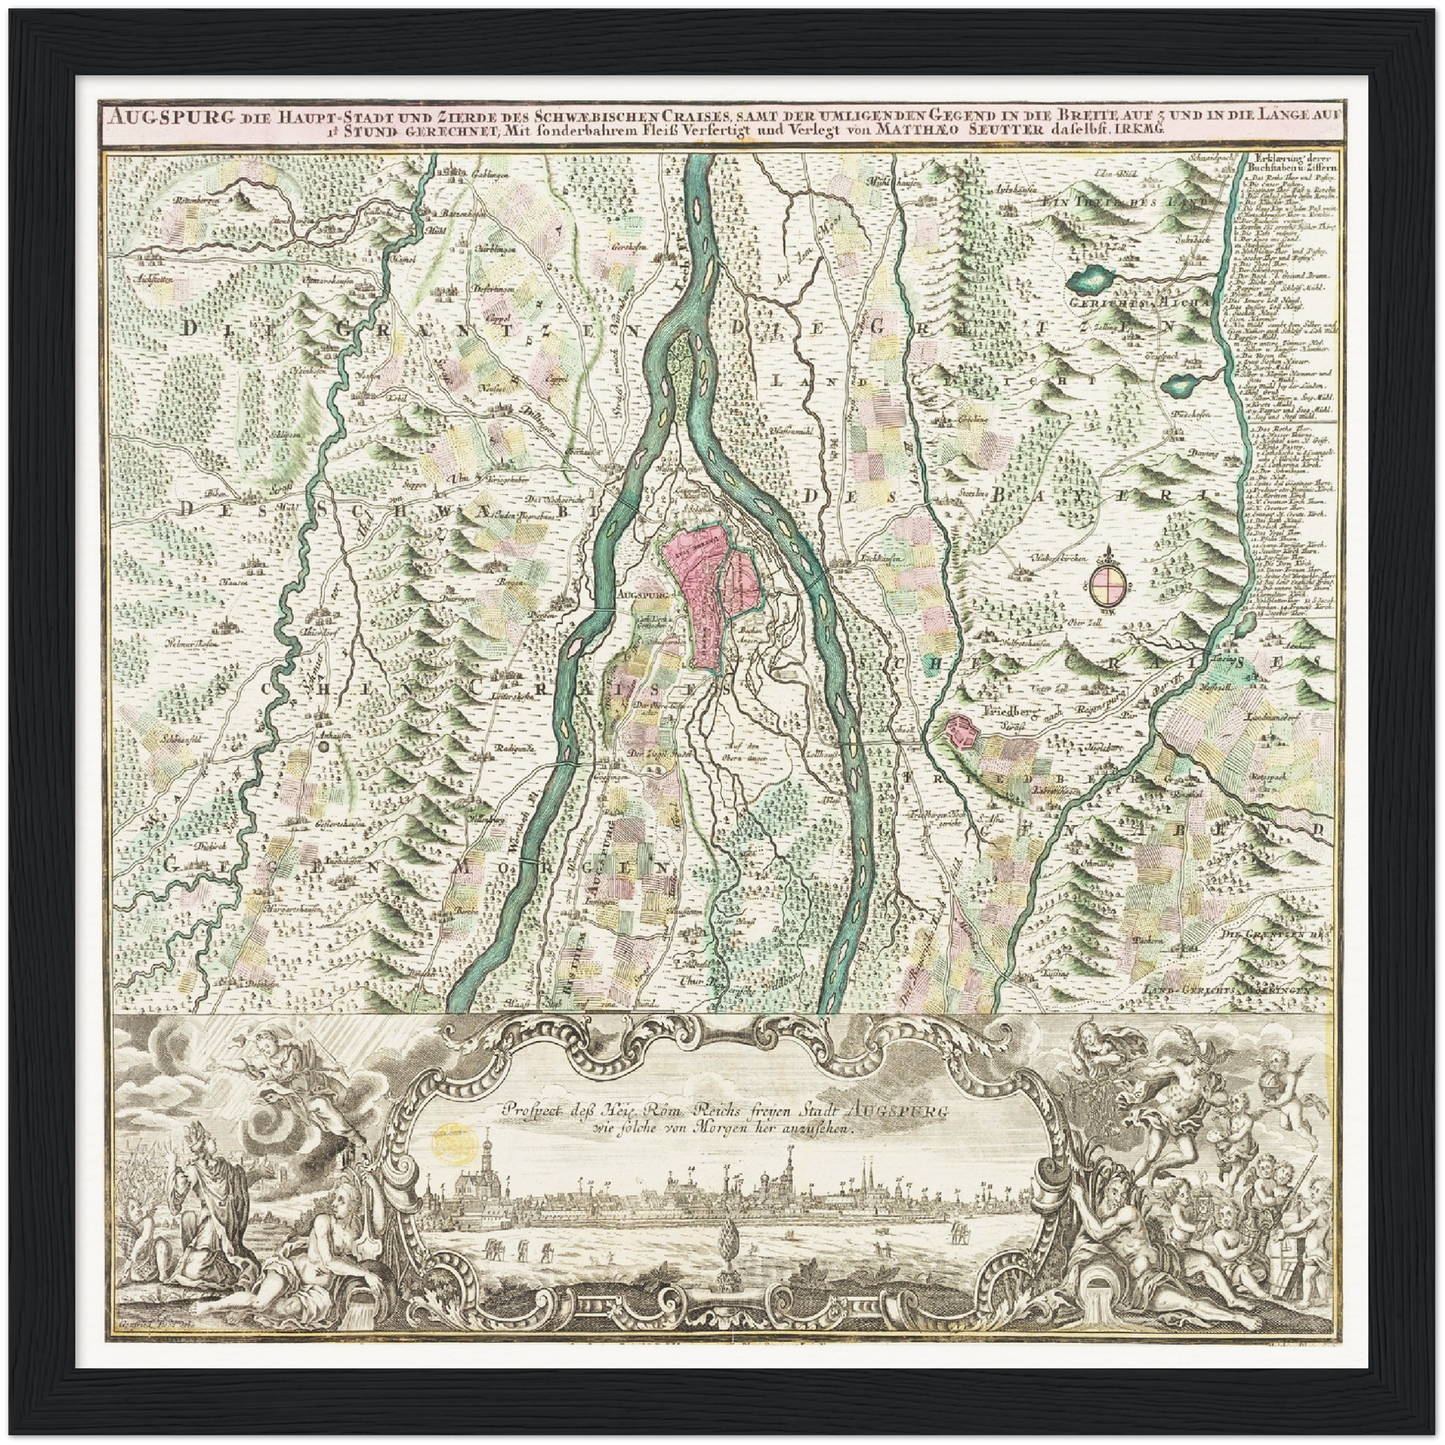 Historische Landkarte Augsburg um 1750